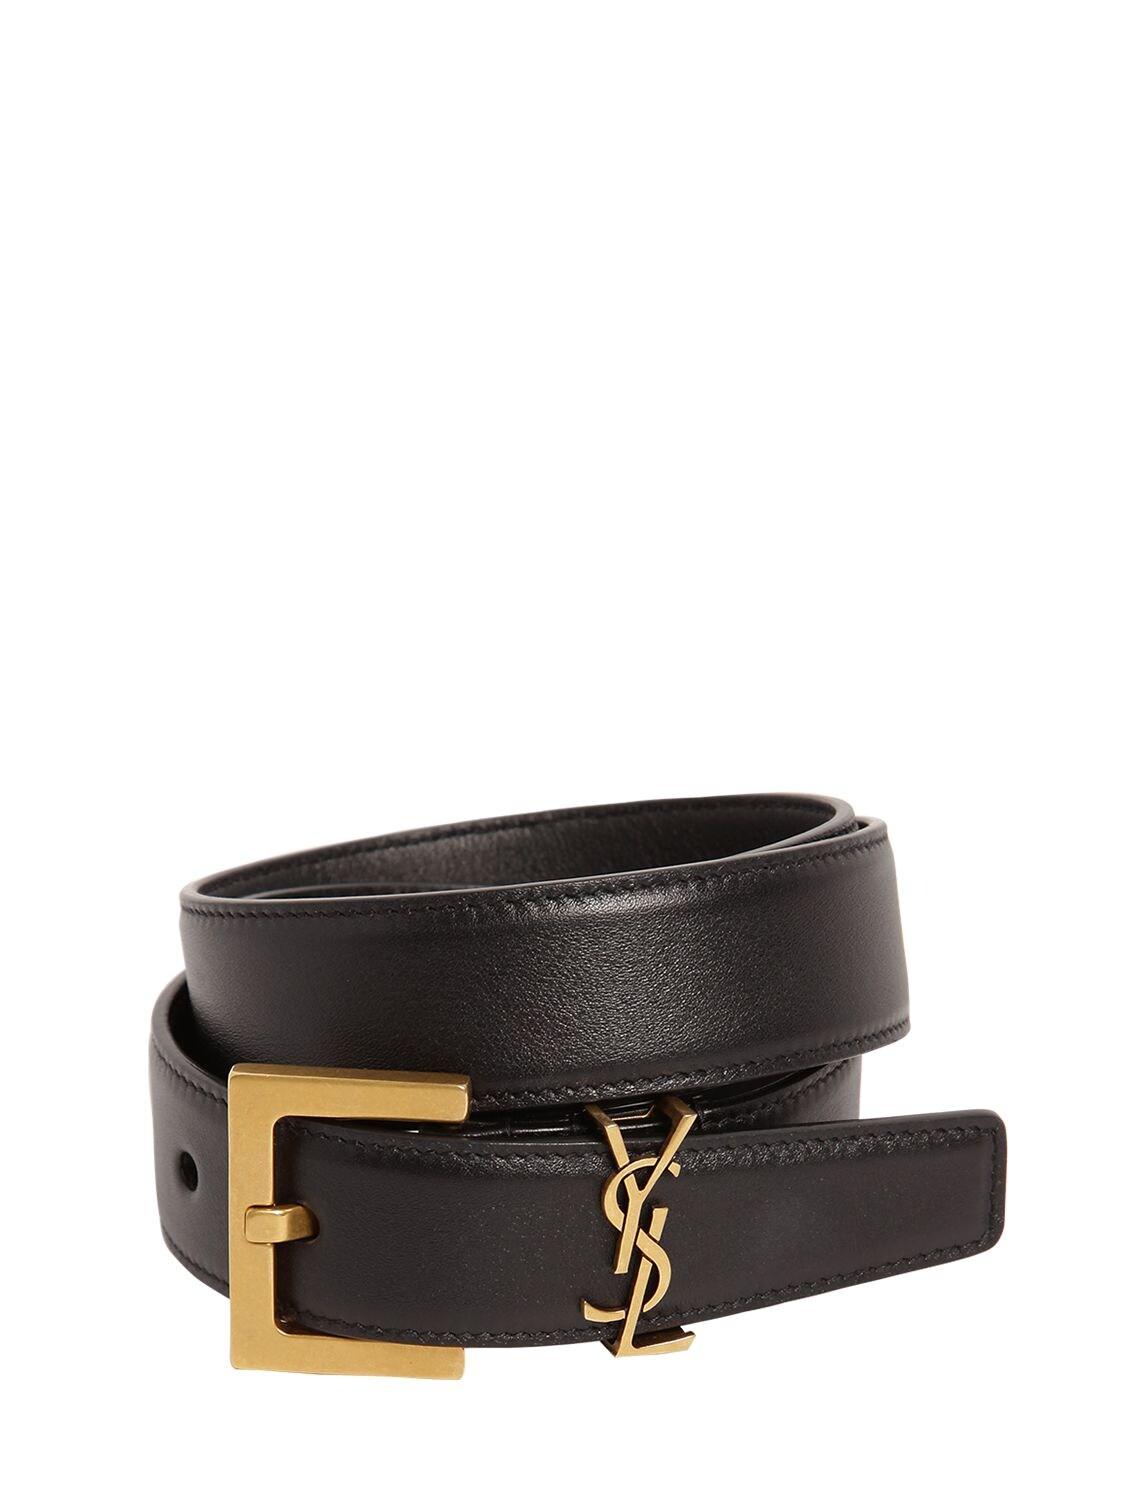 Saint Laurent 3cm Monogram Leather Belt in Black | Lyst